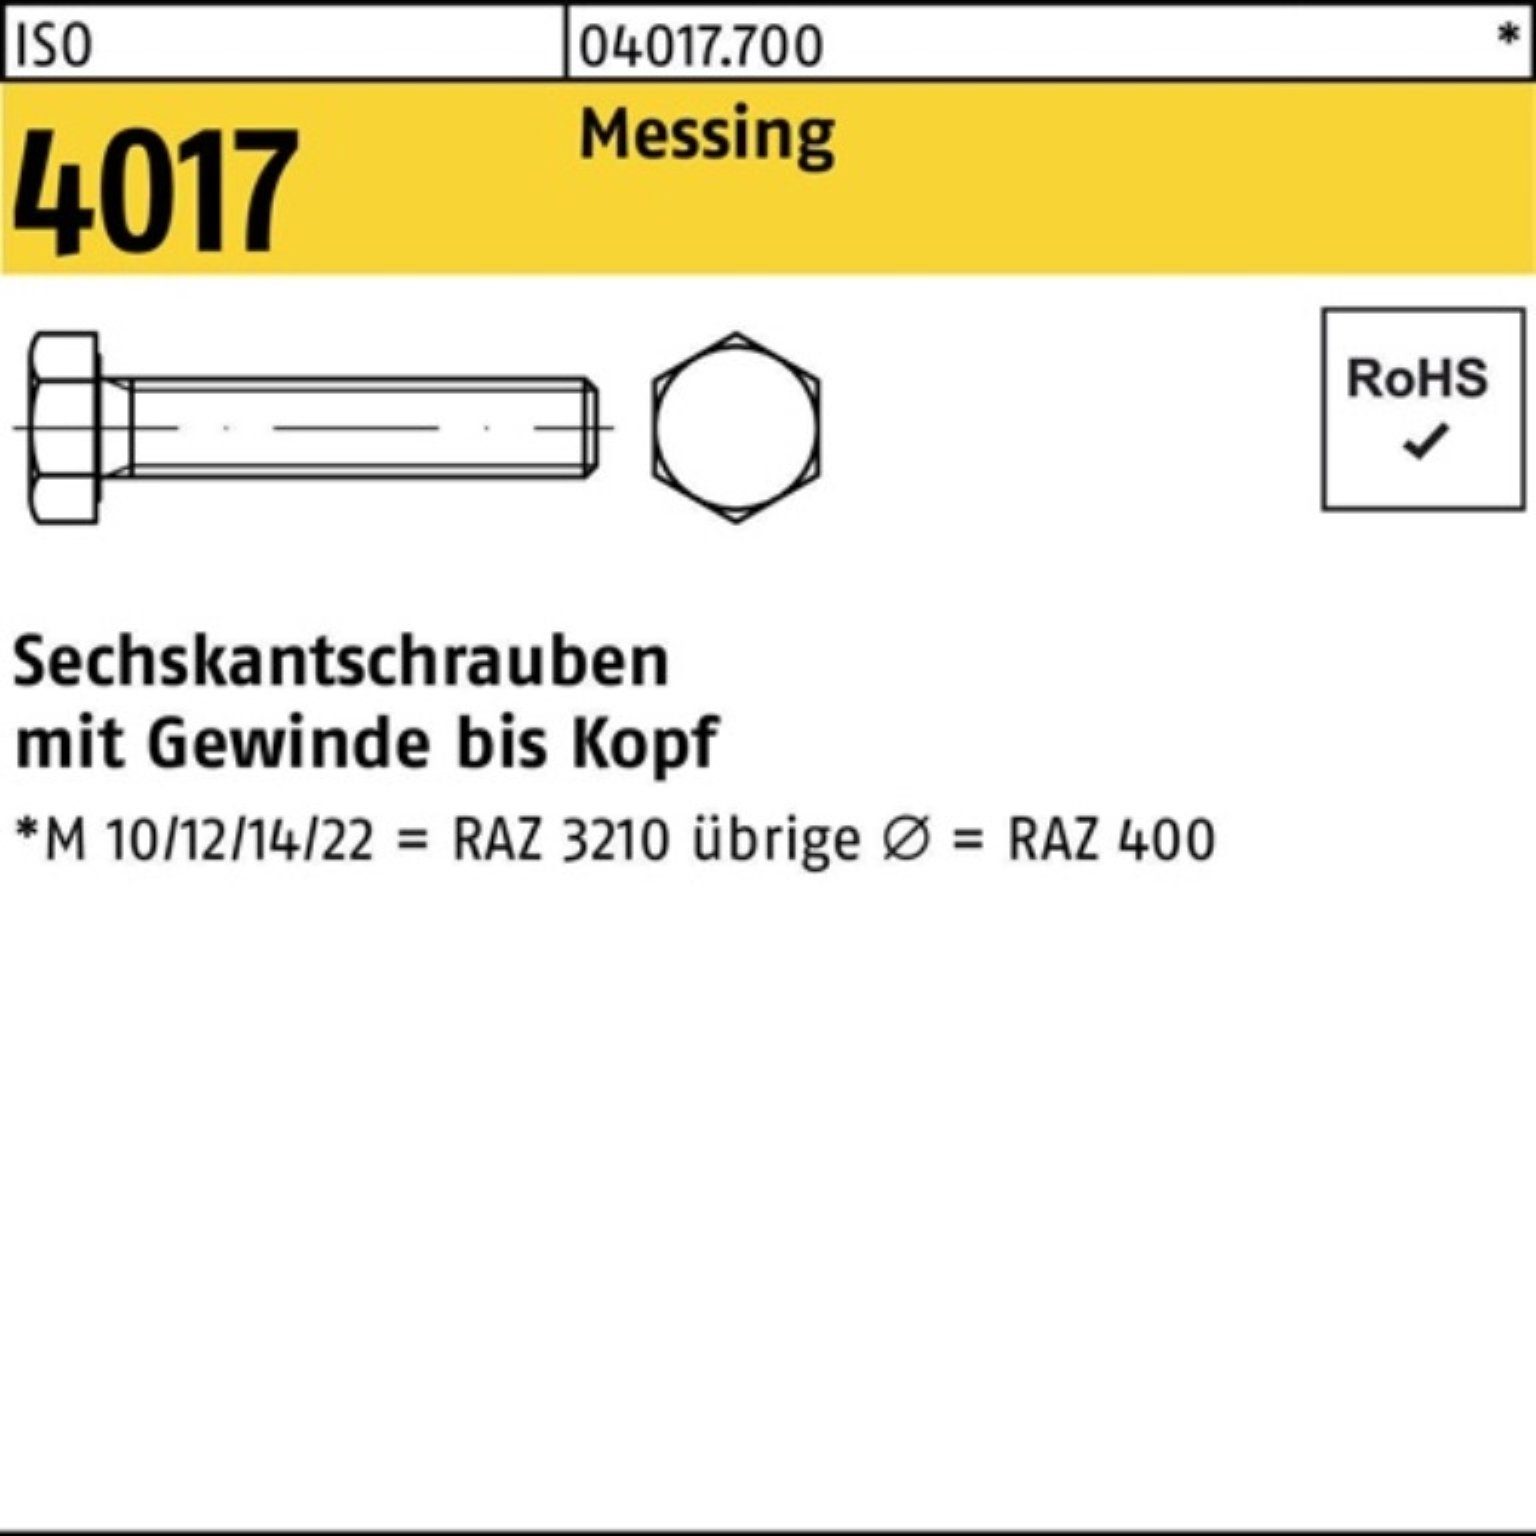 Bufab Sechskantschraube 100er Pack Sechskantschraube 4017 Messing 50 M12x VG ISO ISO Stück 55